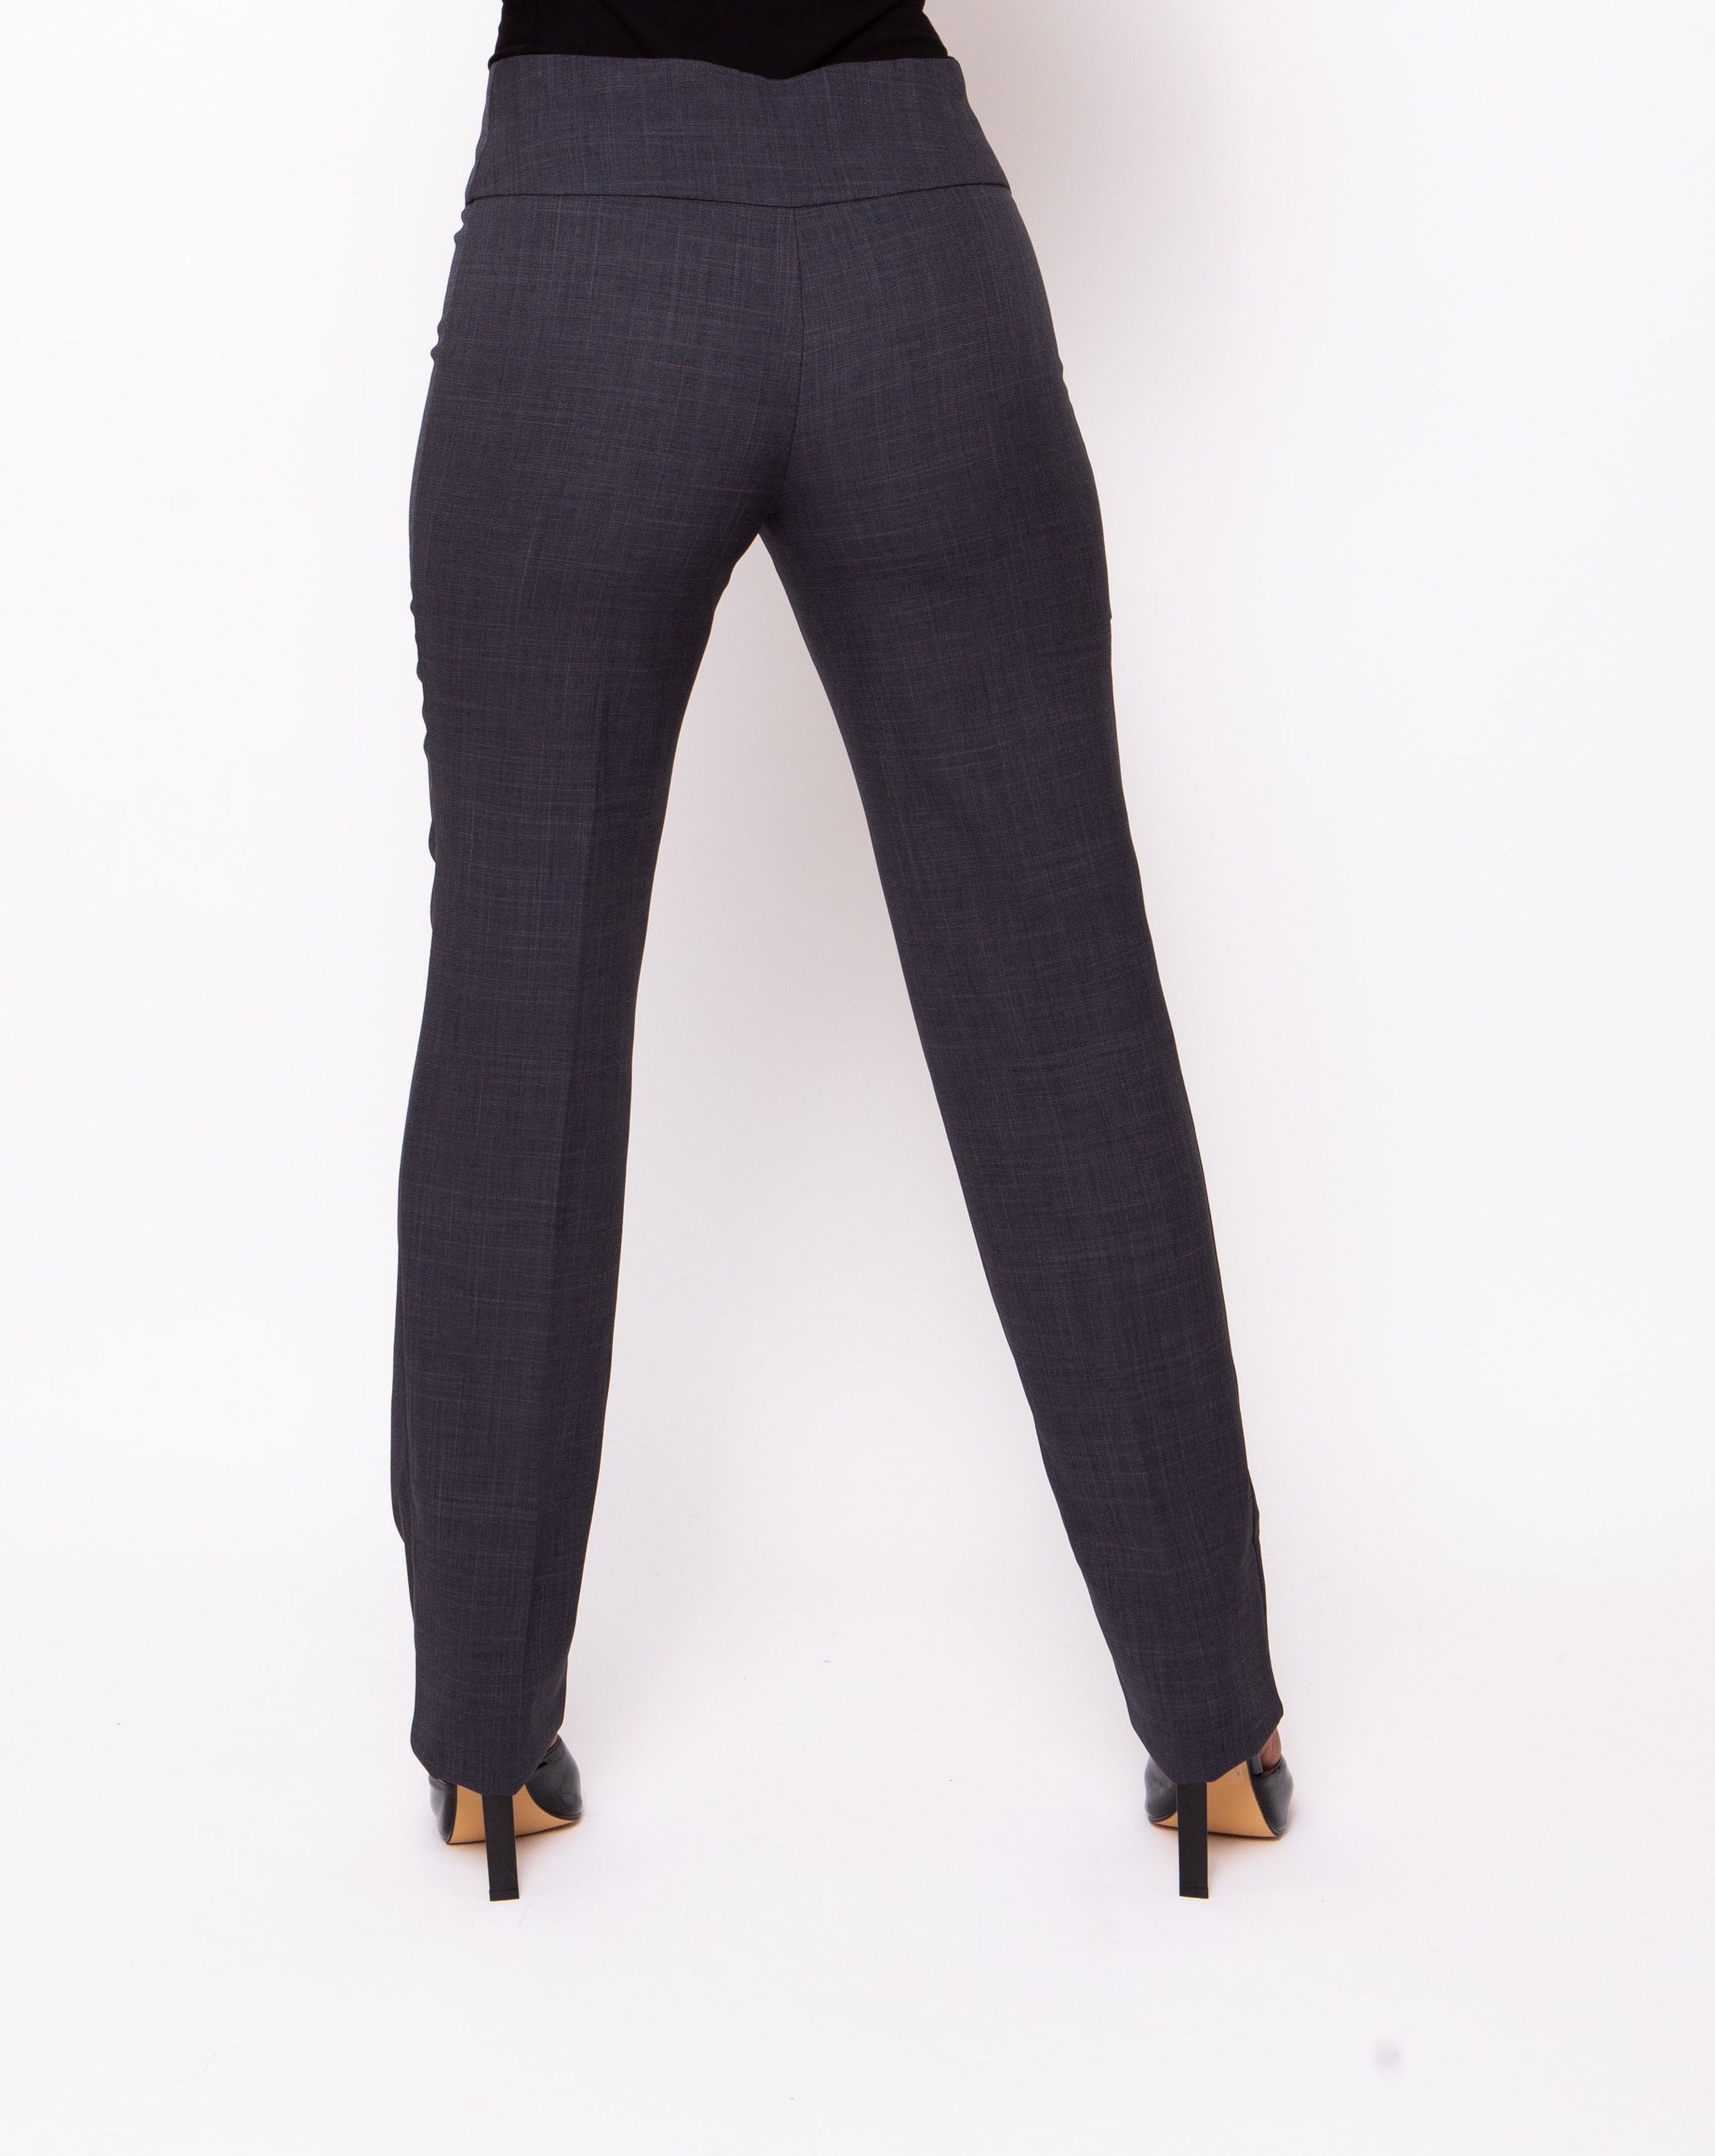 Black Trousers for Women  Female Black Beauty Work Formal Pants – Salonwear